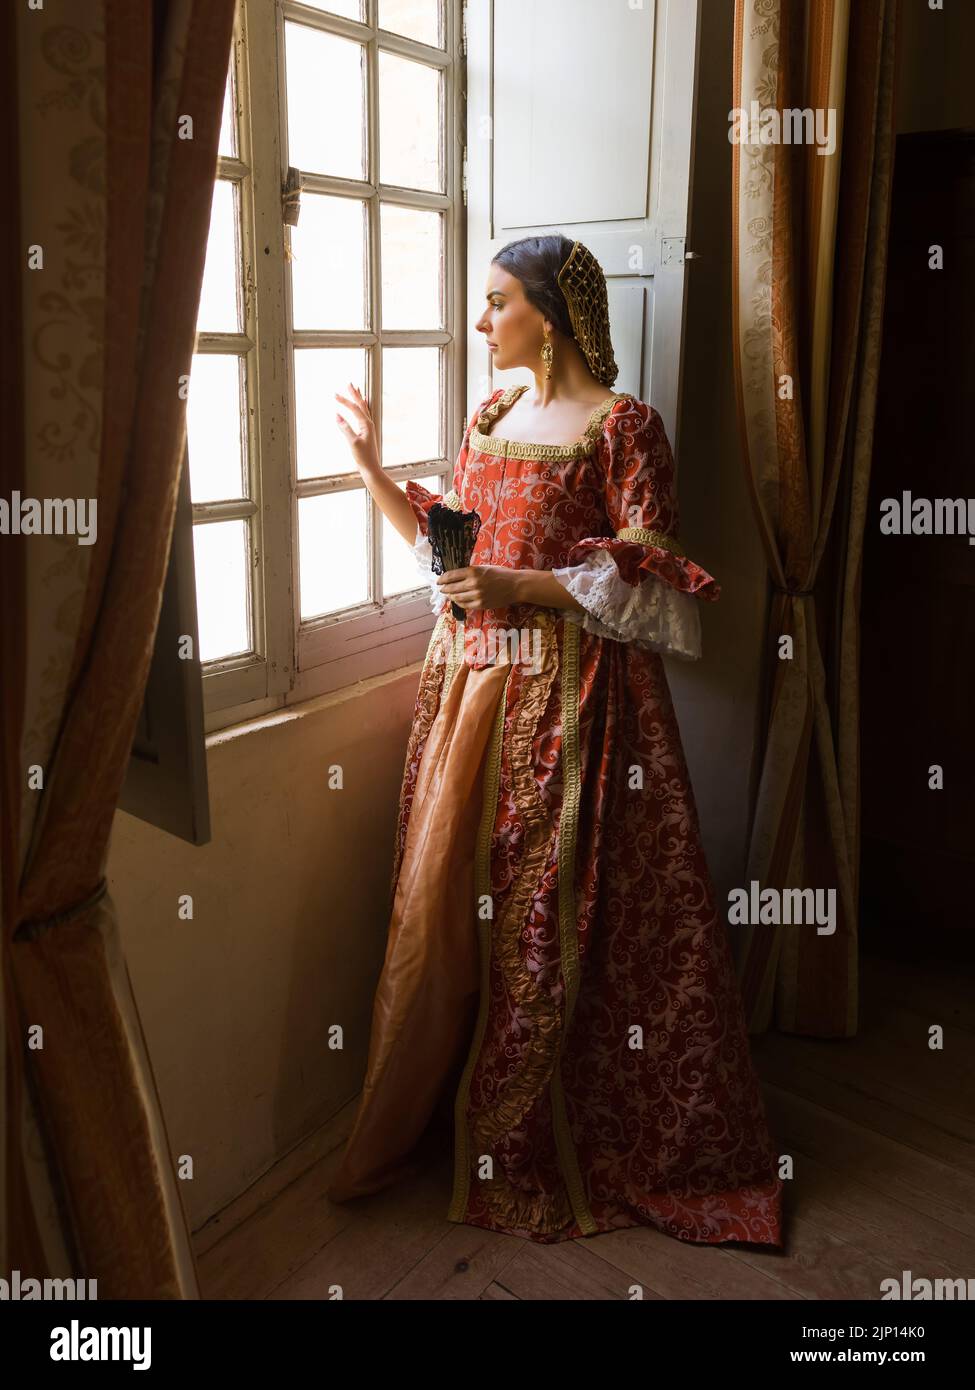 Frau mit authentischem Renaissance-Kostüm und Kopfschmuck, die in einem mittelalterlichen Schloss an ihrem Fenster steht Stockfoto